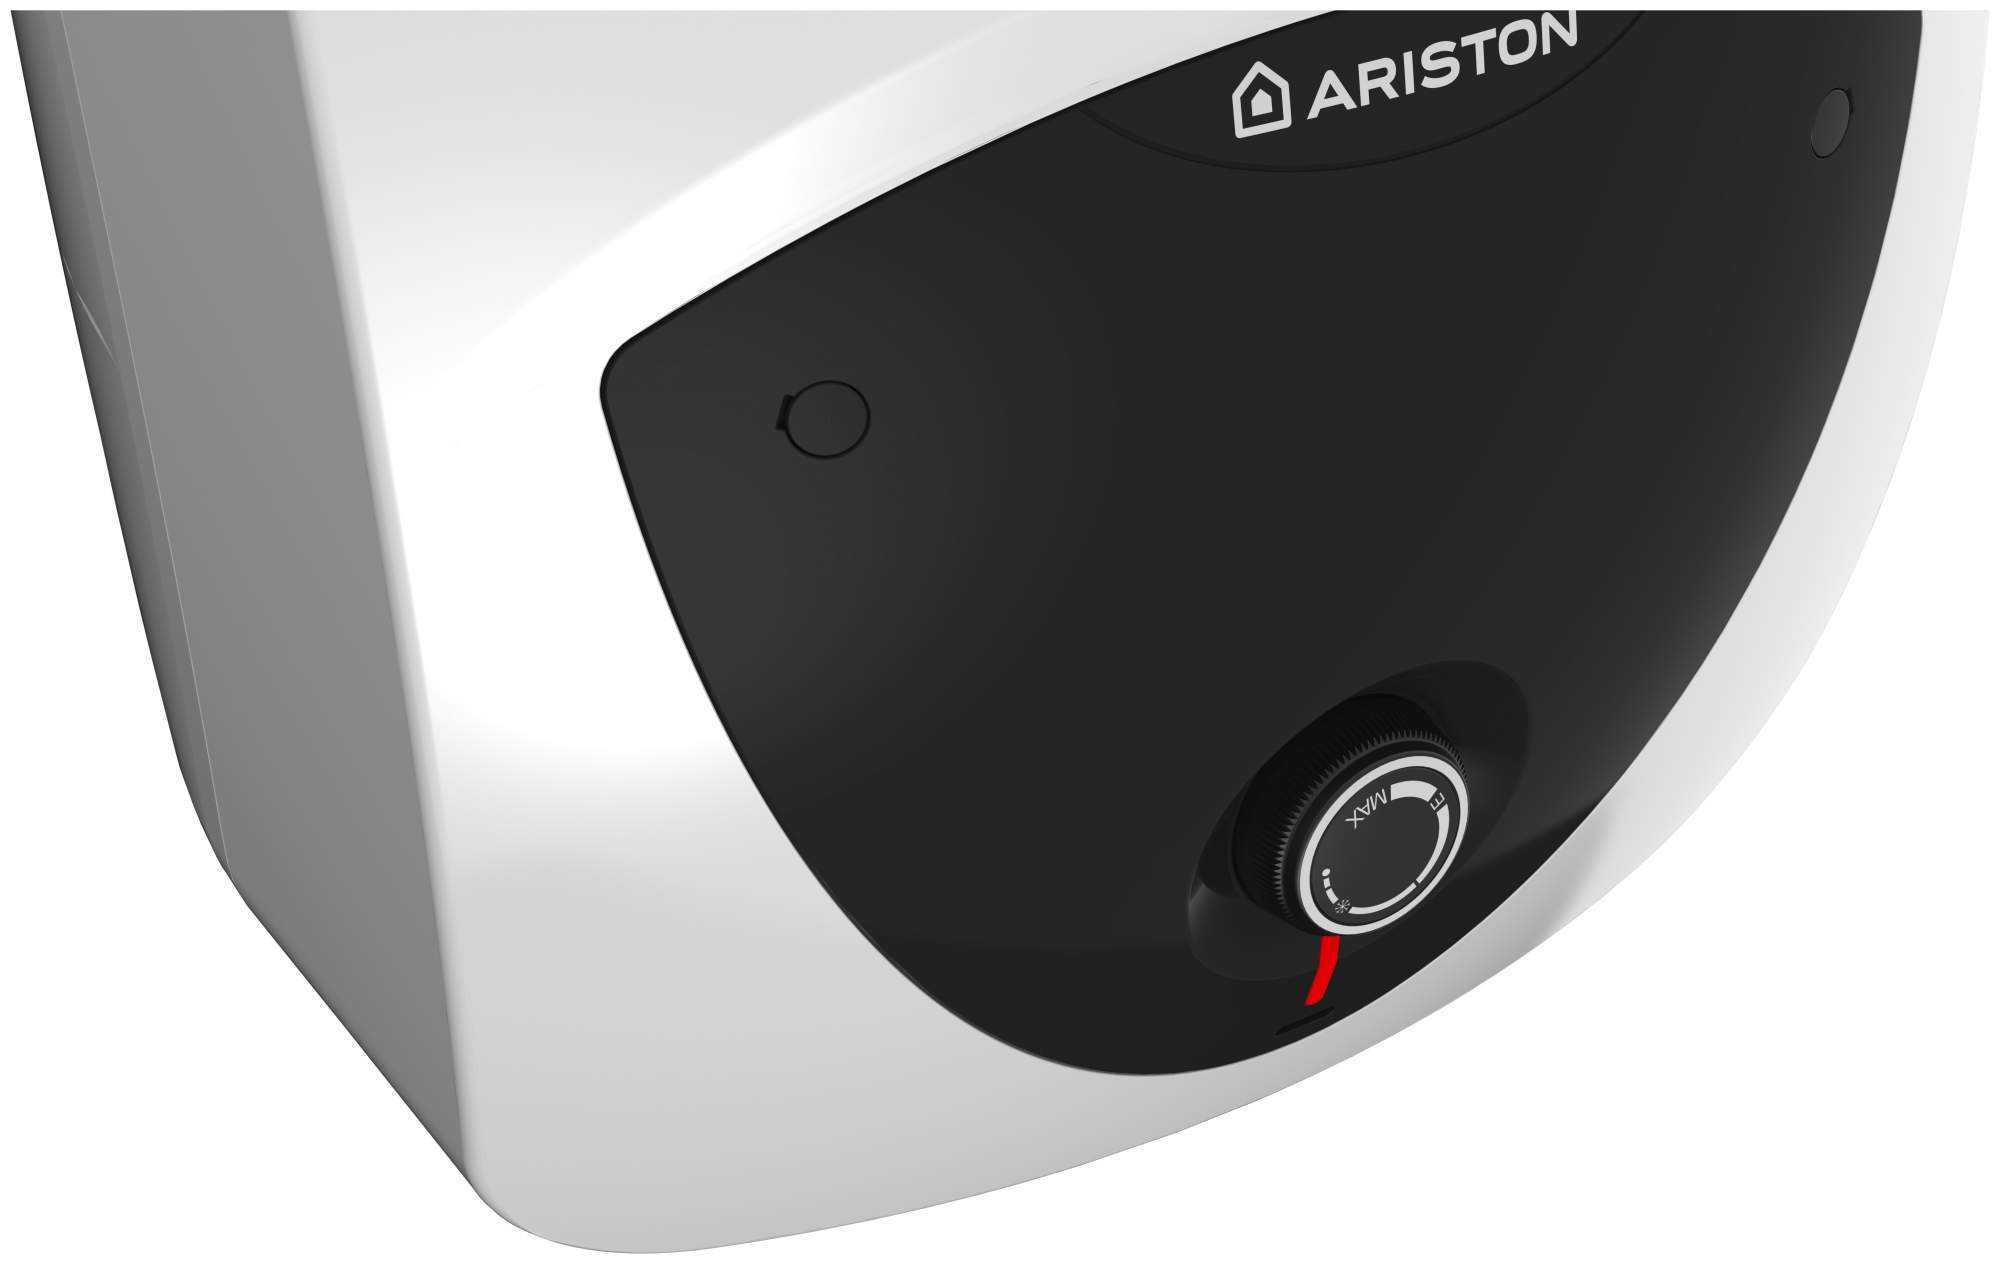 Топ-15 лучших моделей накопительных водонагревателей ariston: рейтинг 2020 года и как выбрать устройство